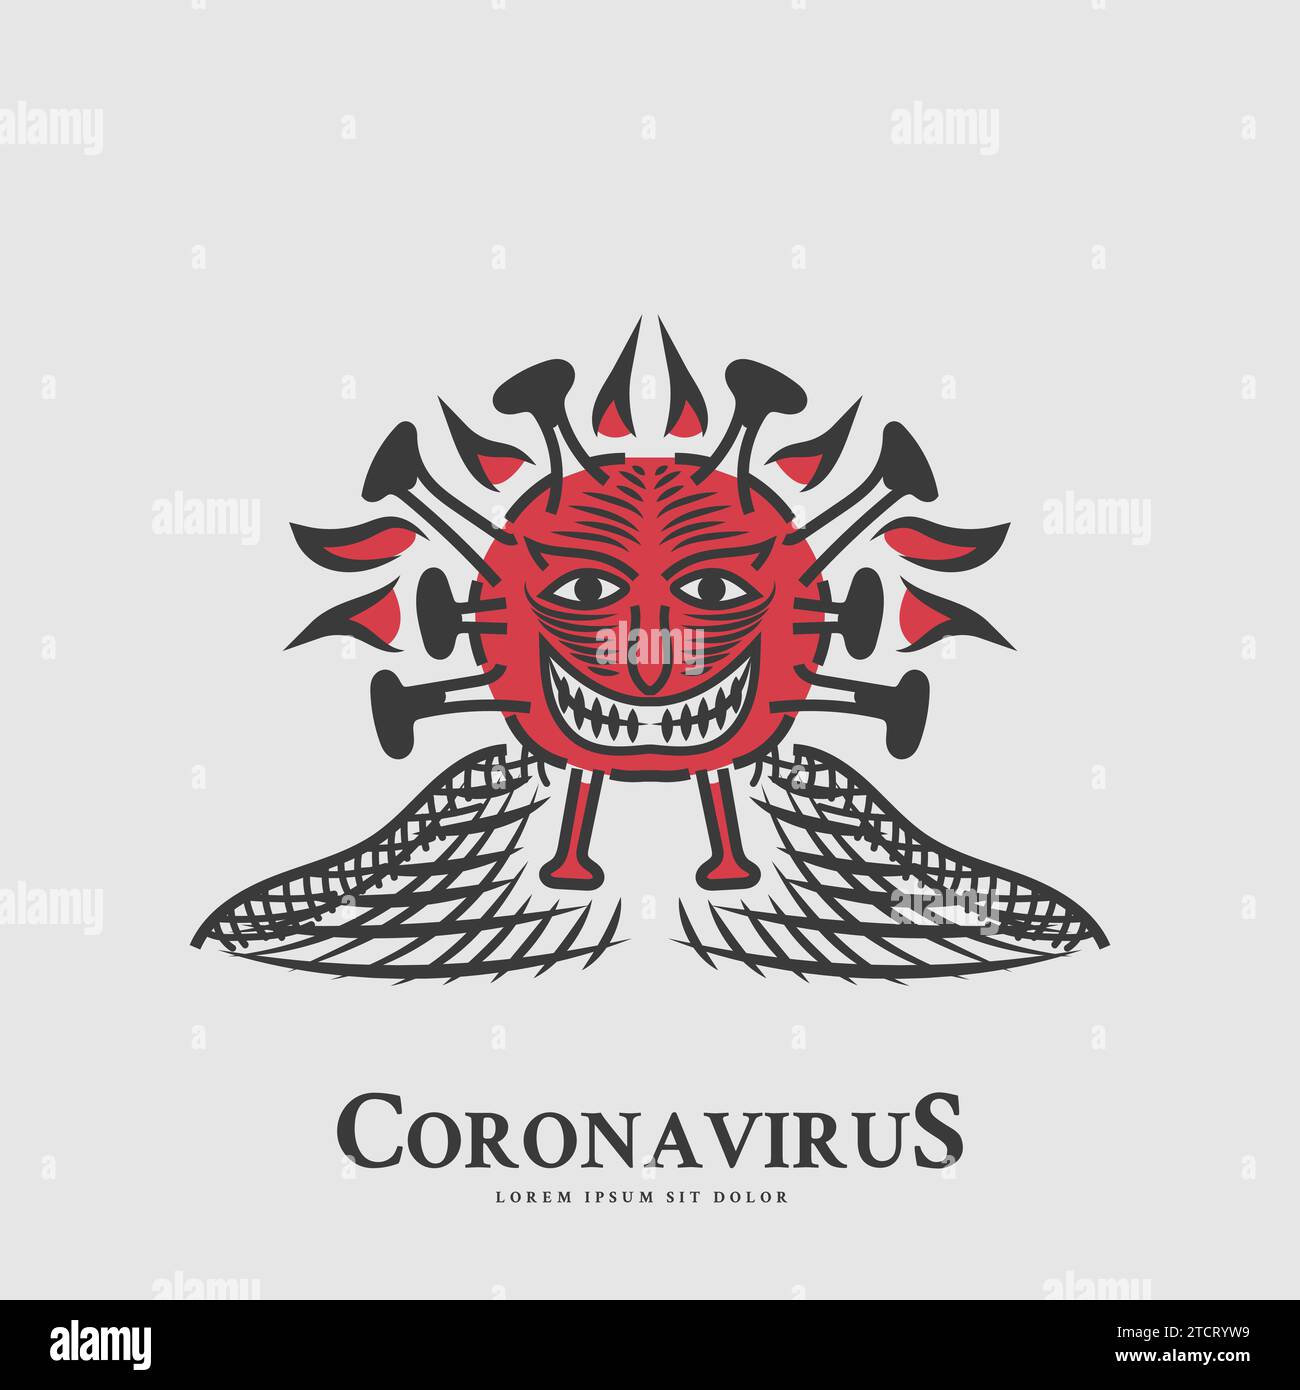 Illustrazione del coronavirus con un sorriso malvagio e inquietante in stile vintage Illustrazione Vettoriale